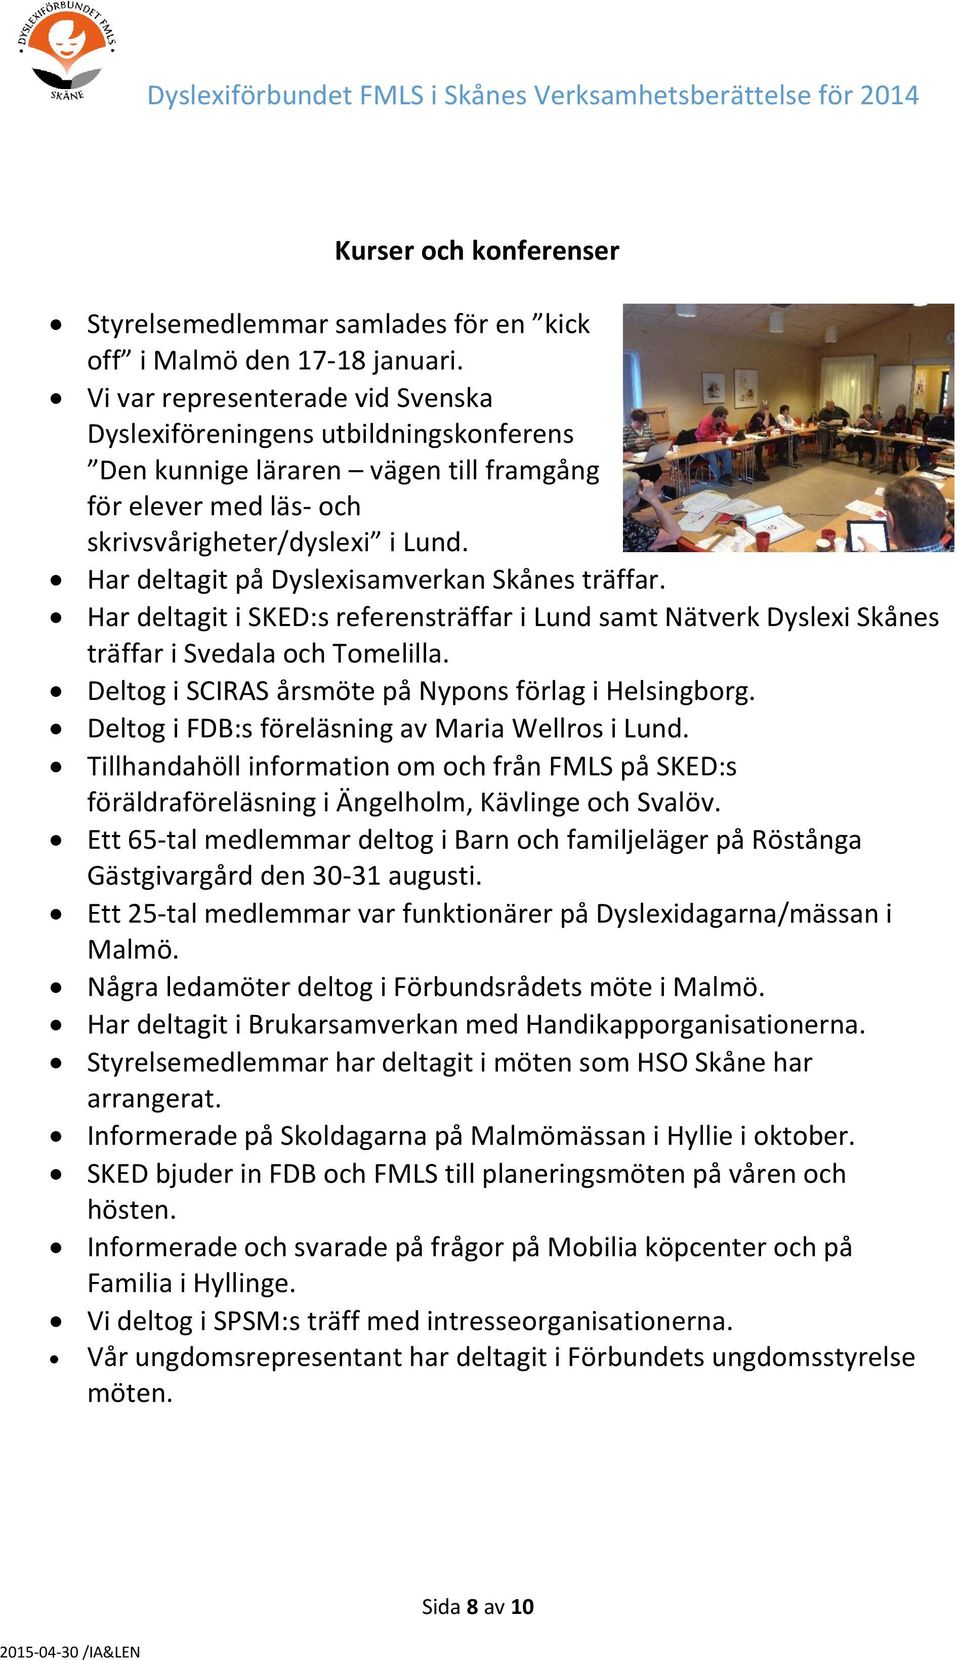 Har deltagit på Dyslexisamverkan Skånes träffar. Har deltagit i SKED:s referensträffar i Lund samt Nätverk Dyslexi Skånes träffar i Svedala och Tomelilla.